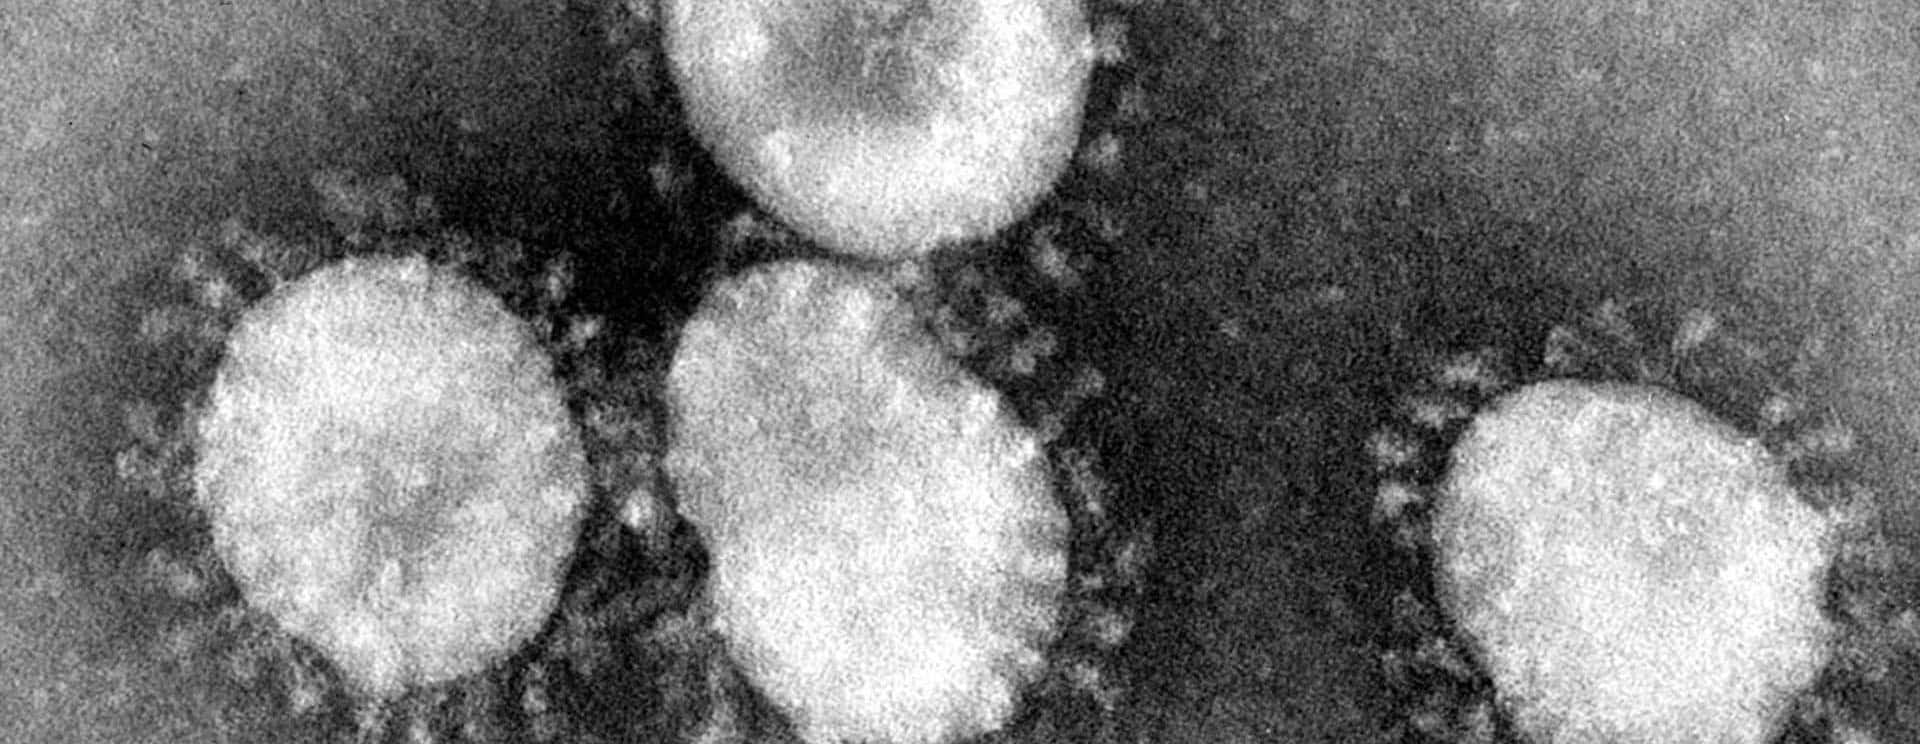 coronaviruses-jpg-41